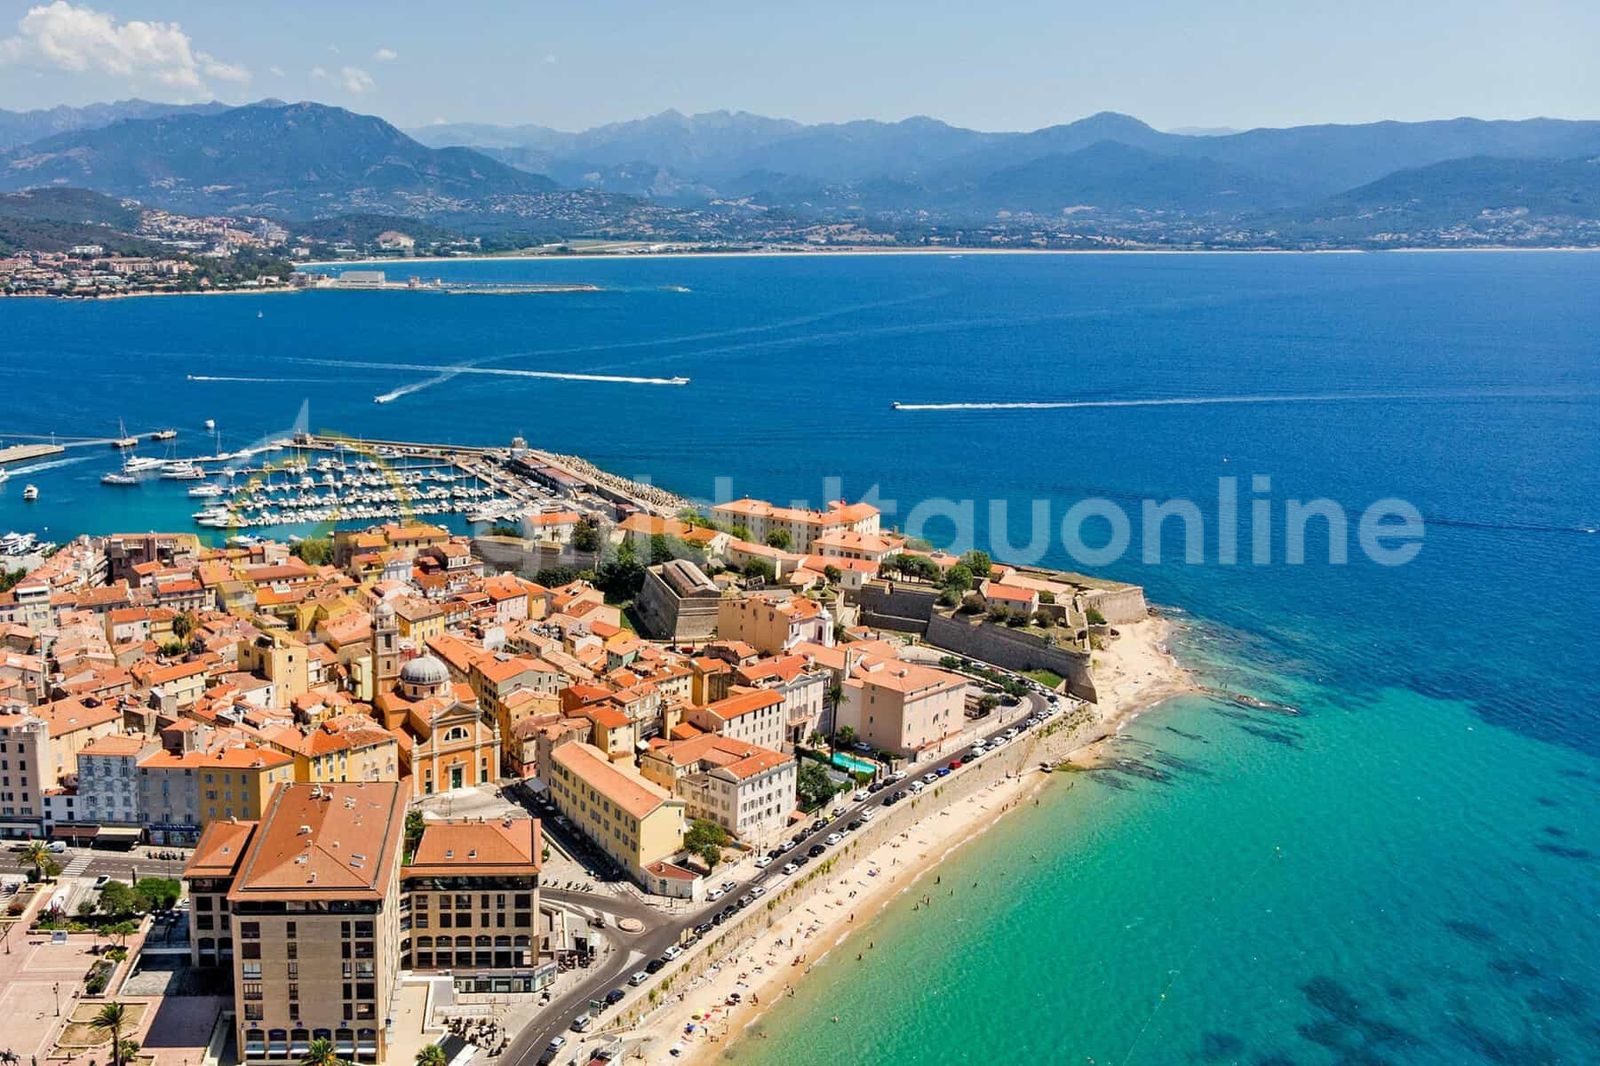 Vacanță pe Insula Corsica - 3 orașe în 3 zile!